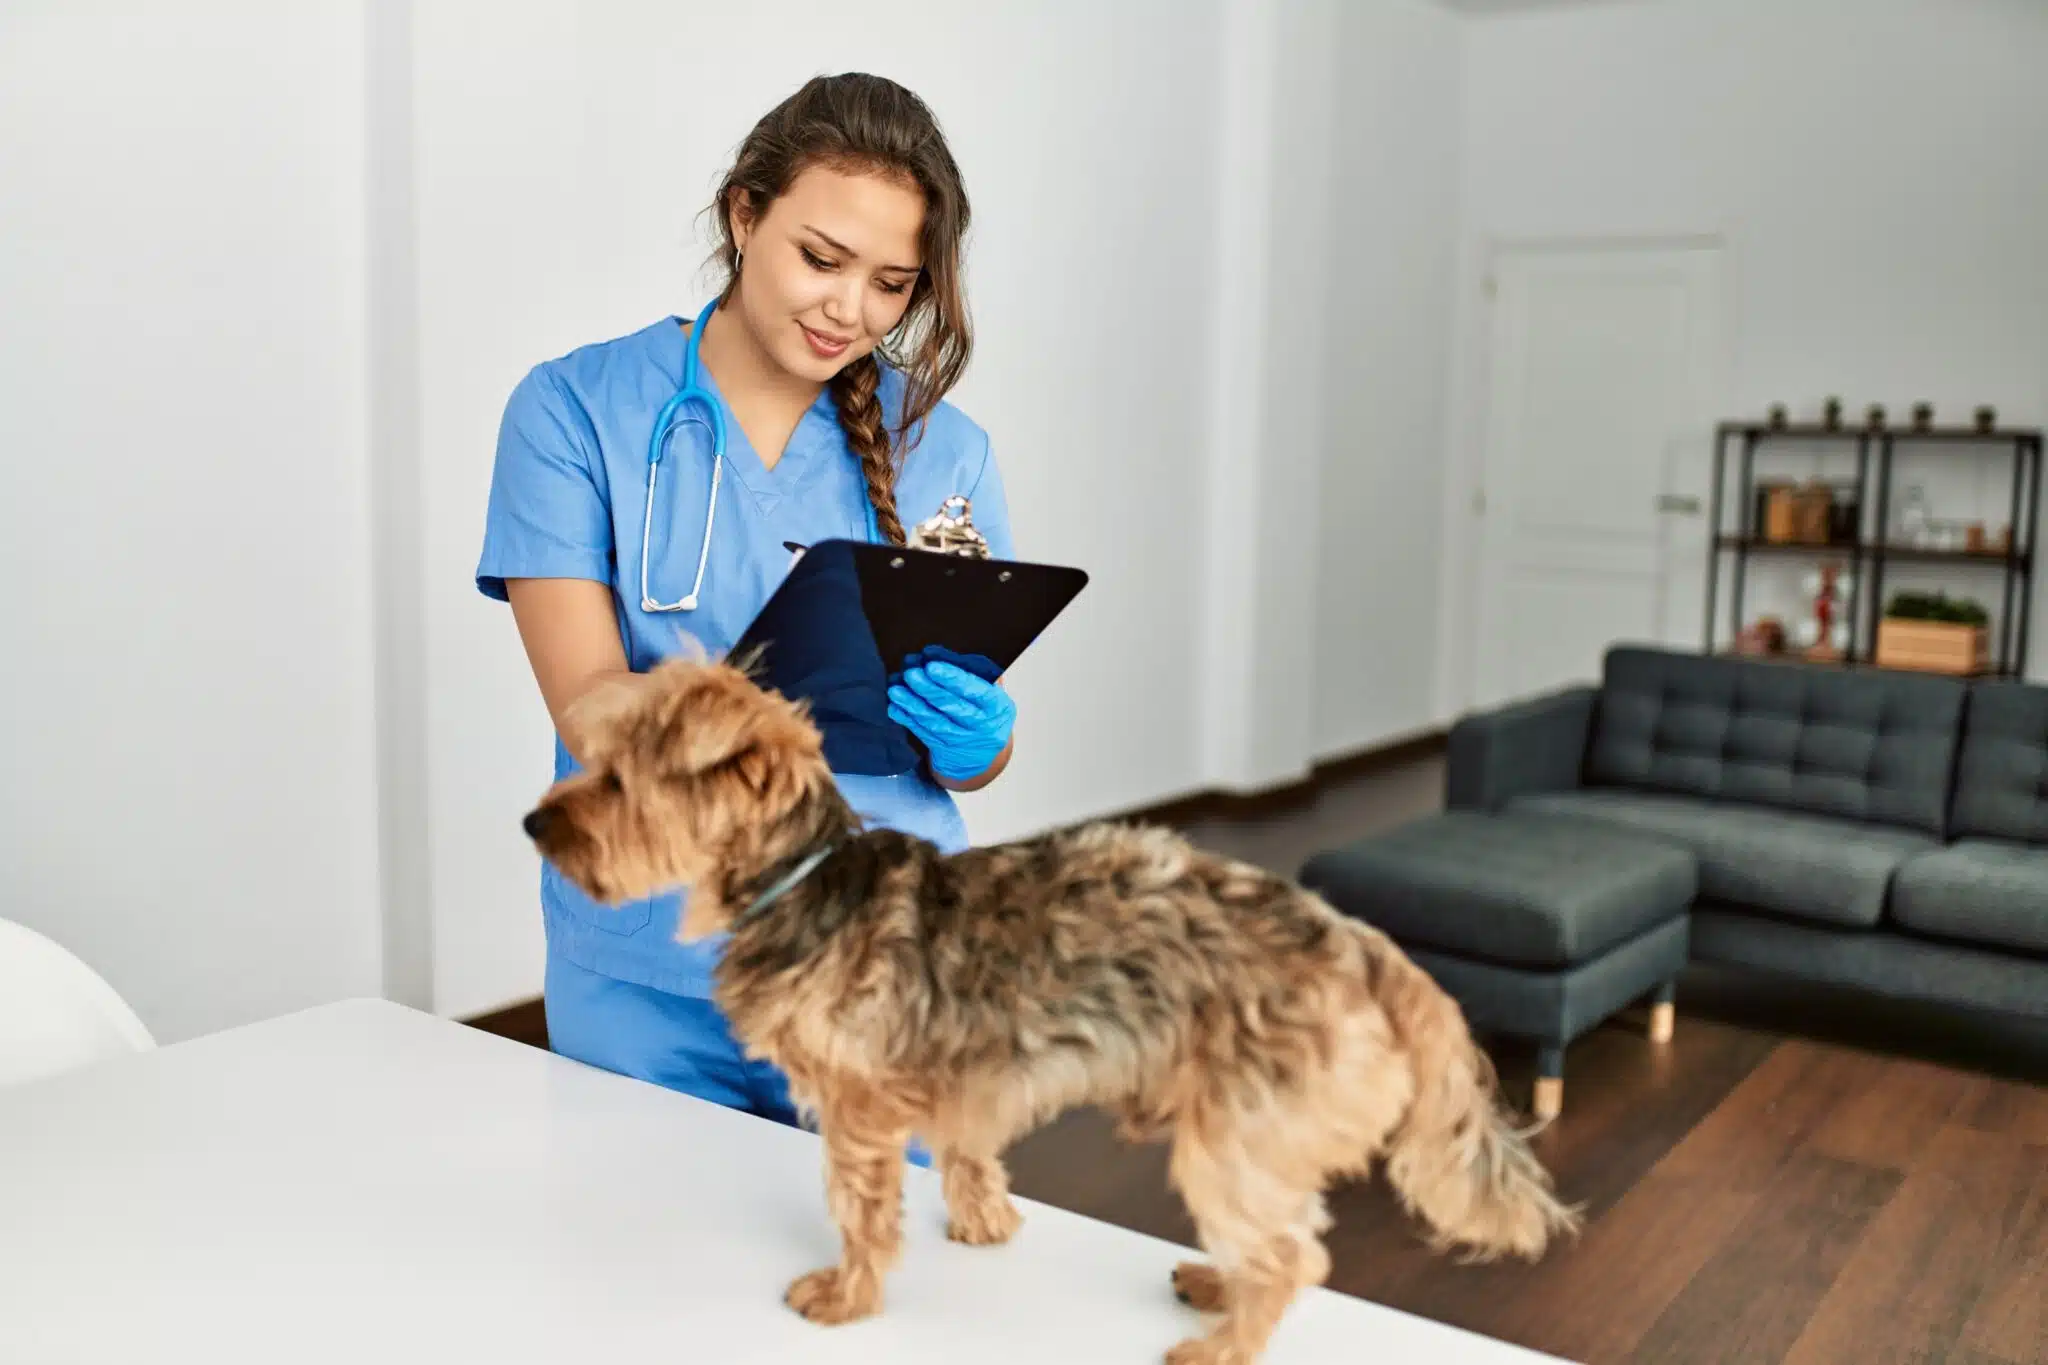 Comment fonctionne les urgences vétérinaires ?